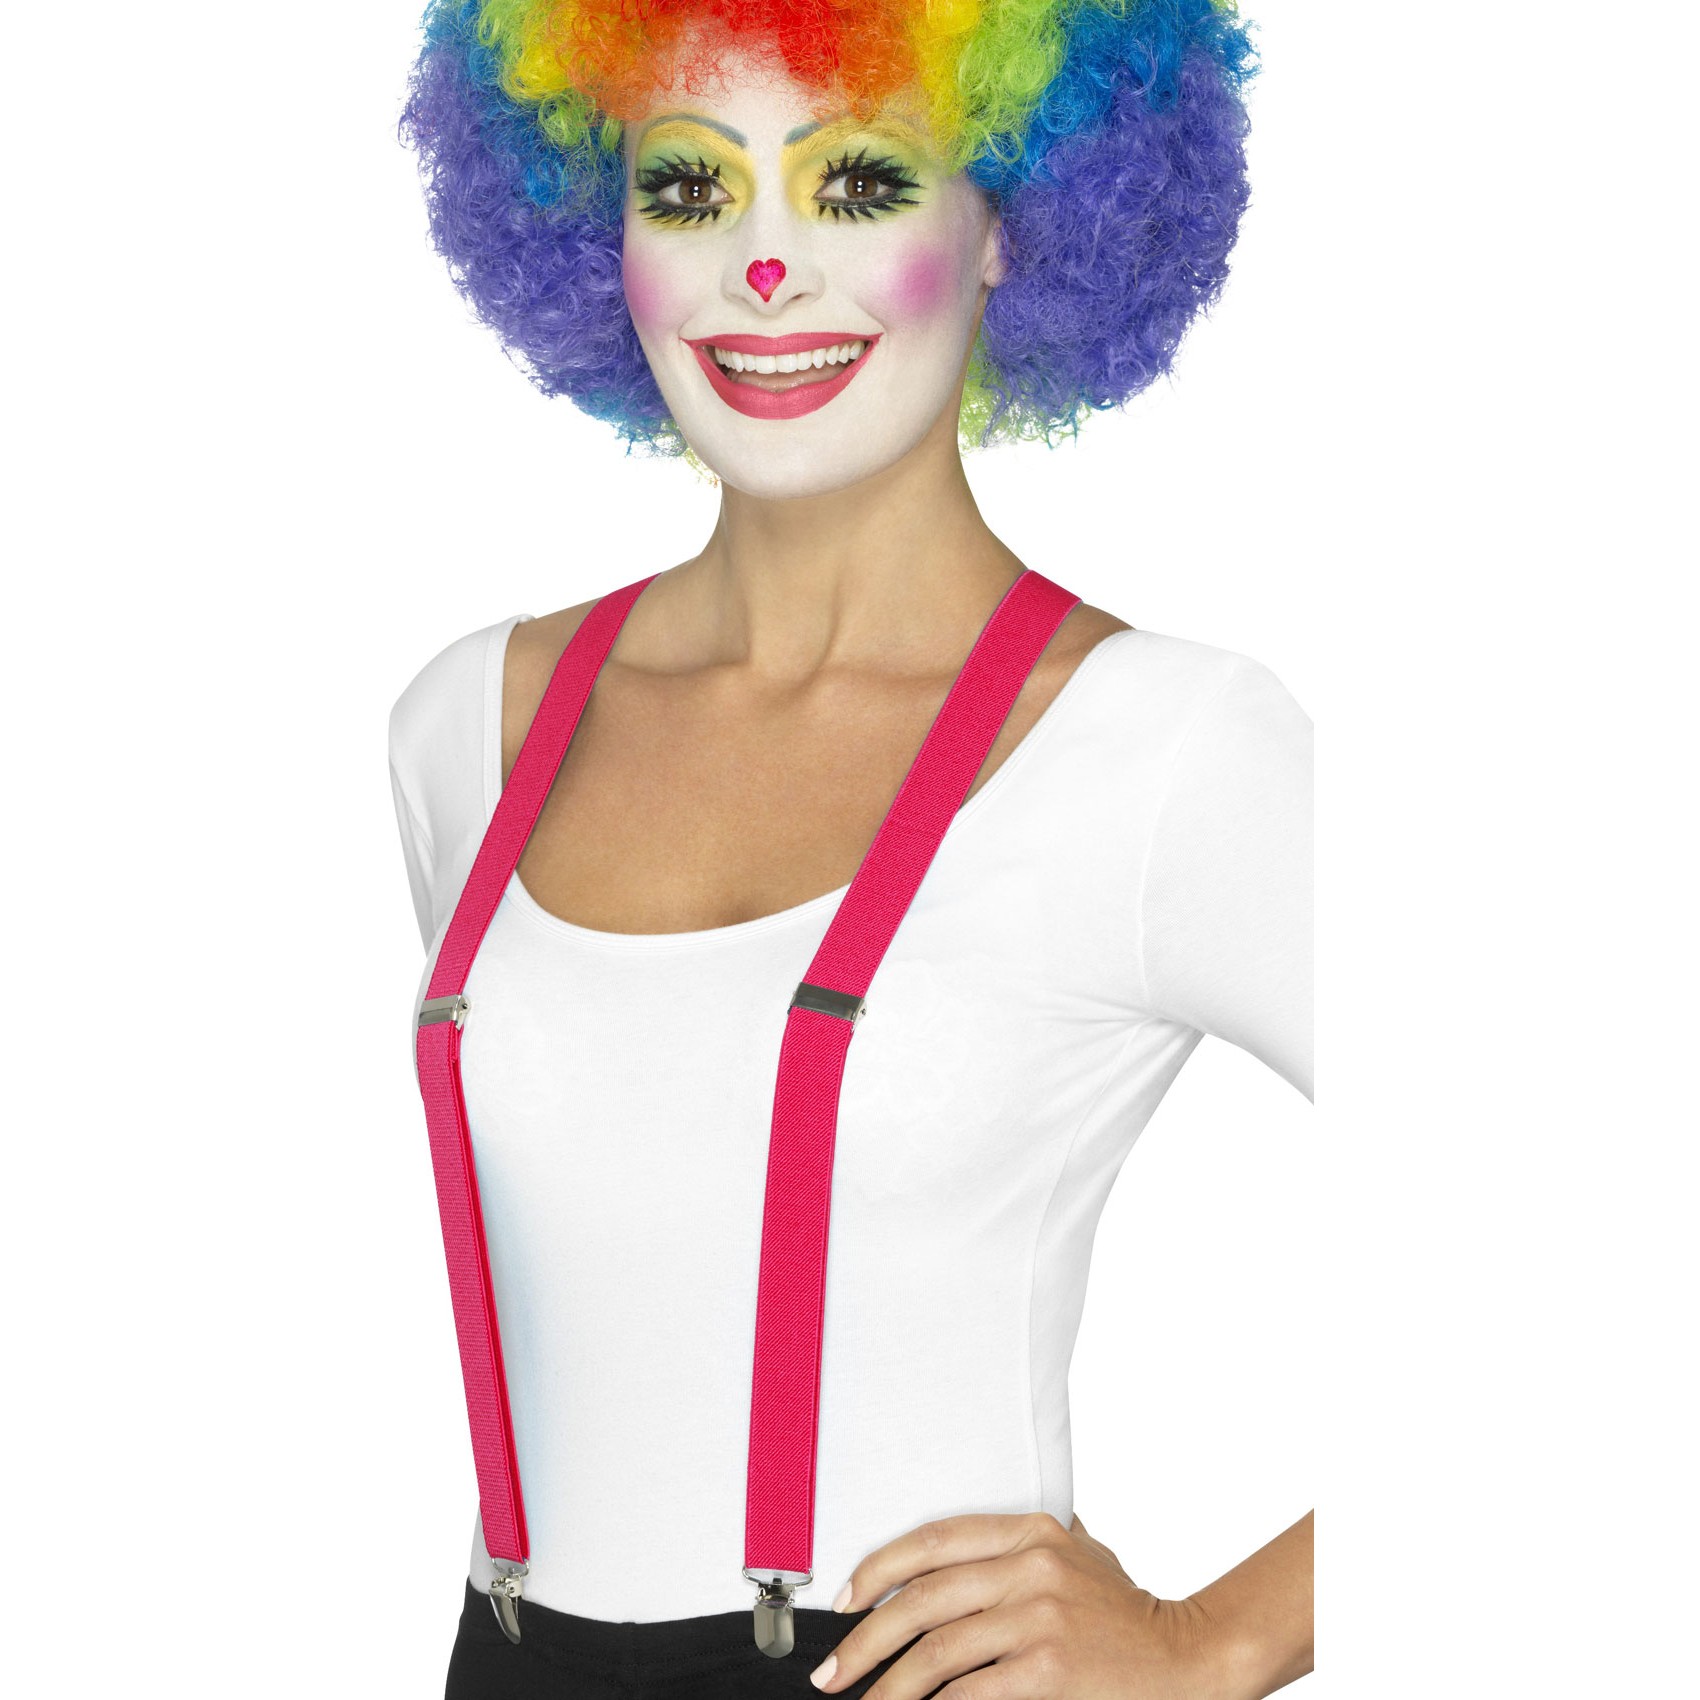 Клоун блю. Клоун с синими волосами. Подтяжки клоуна. Девушка с гримом клоуна и в подтяжках. Сколько стоят подтяжки клоуна-4?.